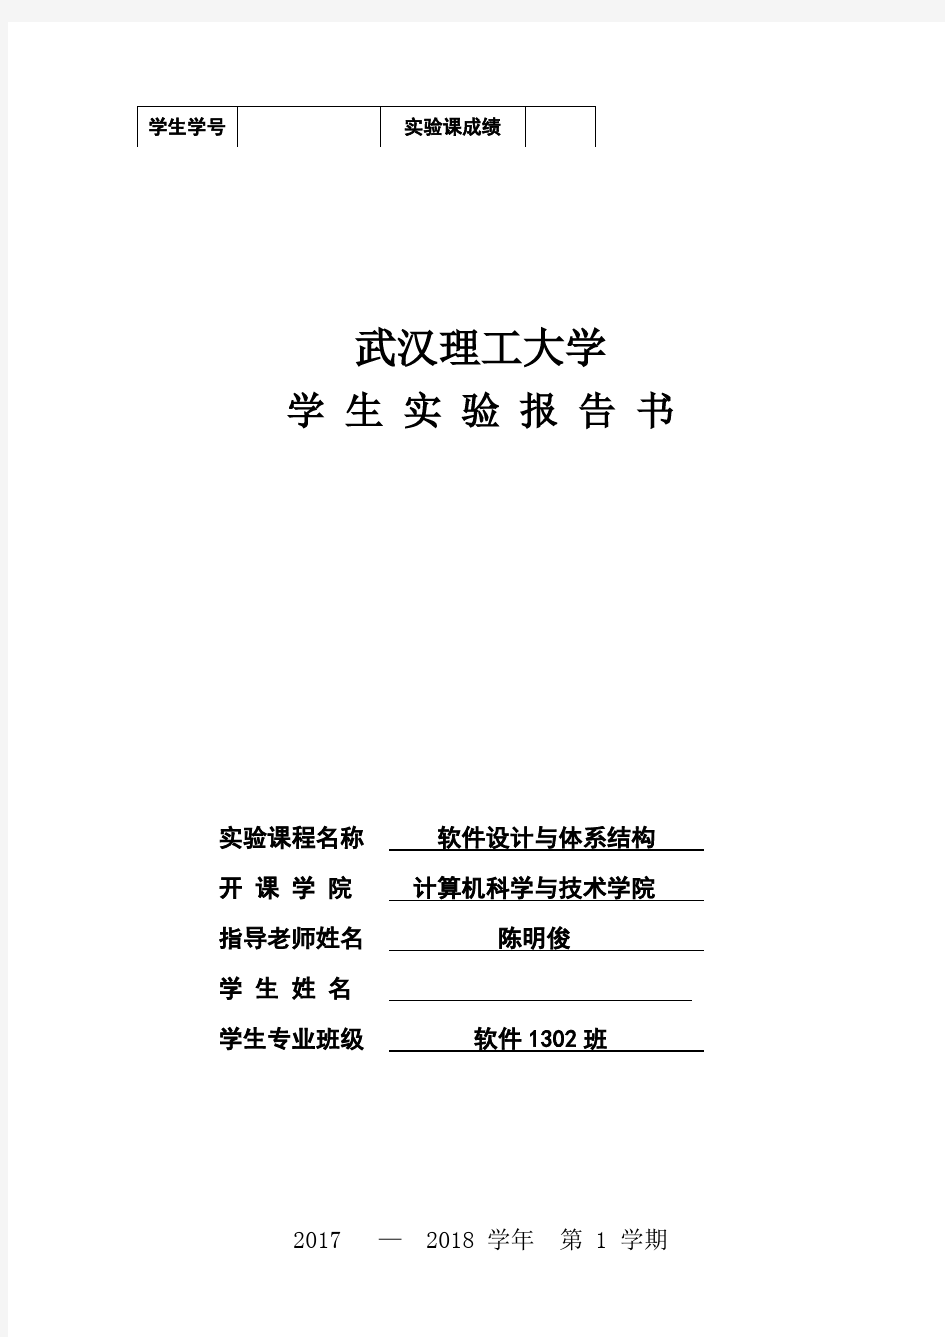 武汉理工大学软件设计与体系结构实验报告_图文 2